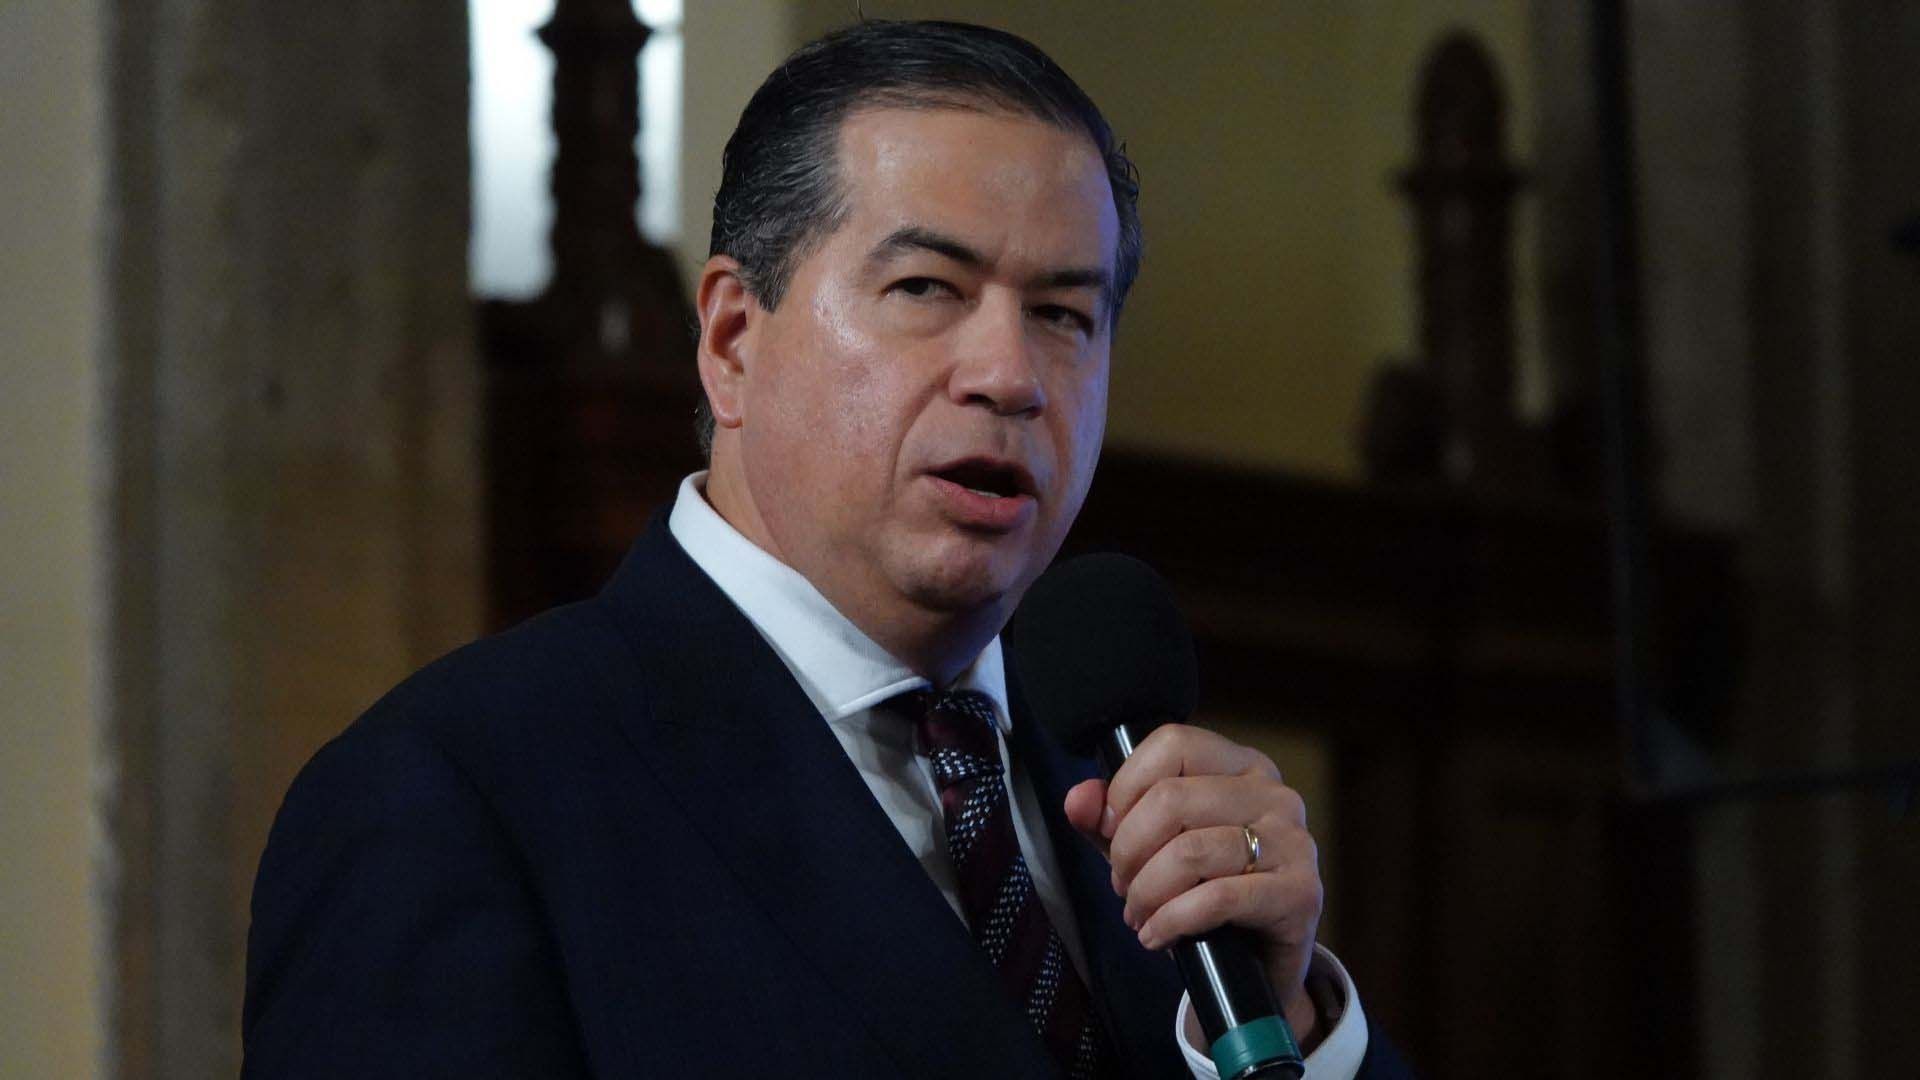 Previamente, Ricardo Mejía Berdeja anunció su renuncia a la Subsecretaría de Seguridad Pública 